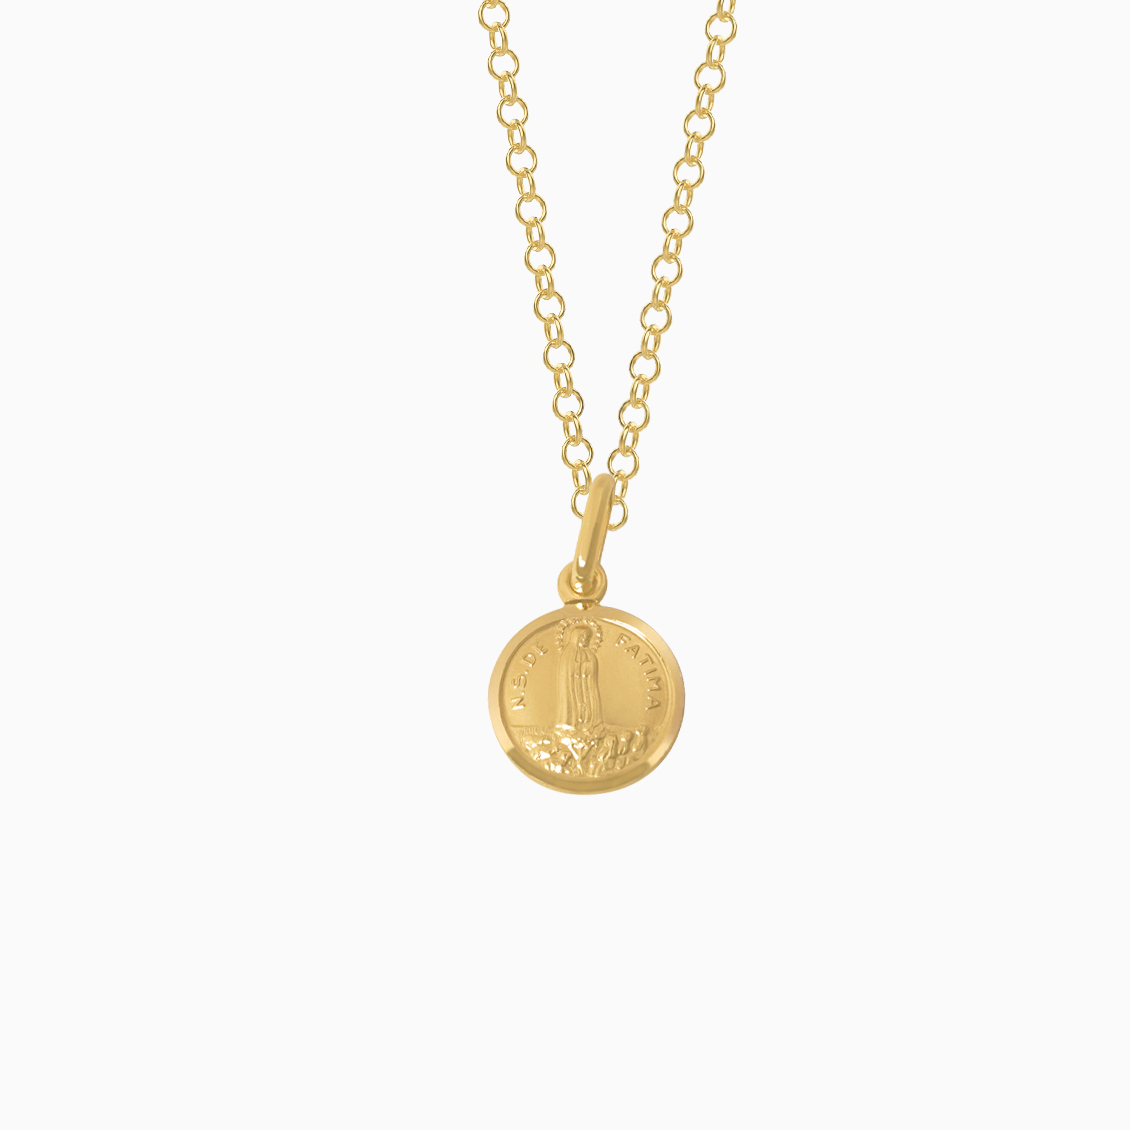 Dije en oro amarillo de 18K medalla circular Virgen de Fátima